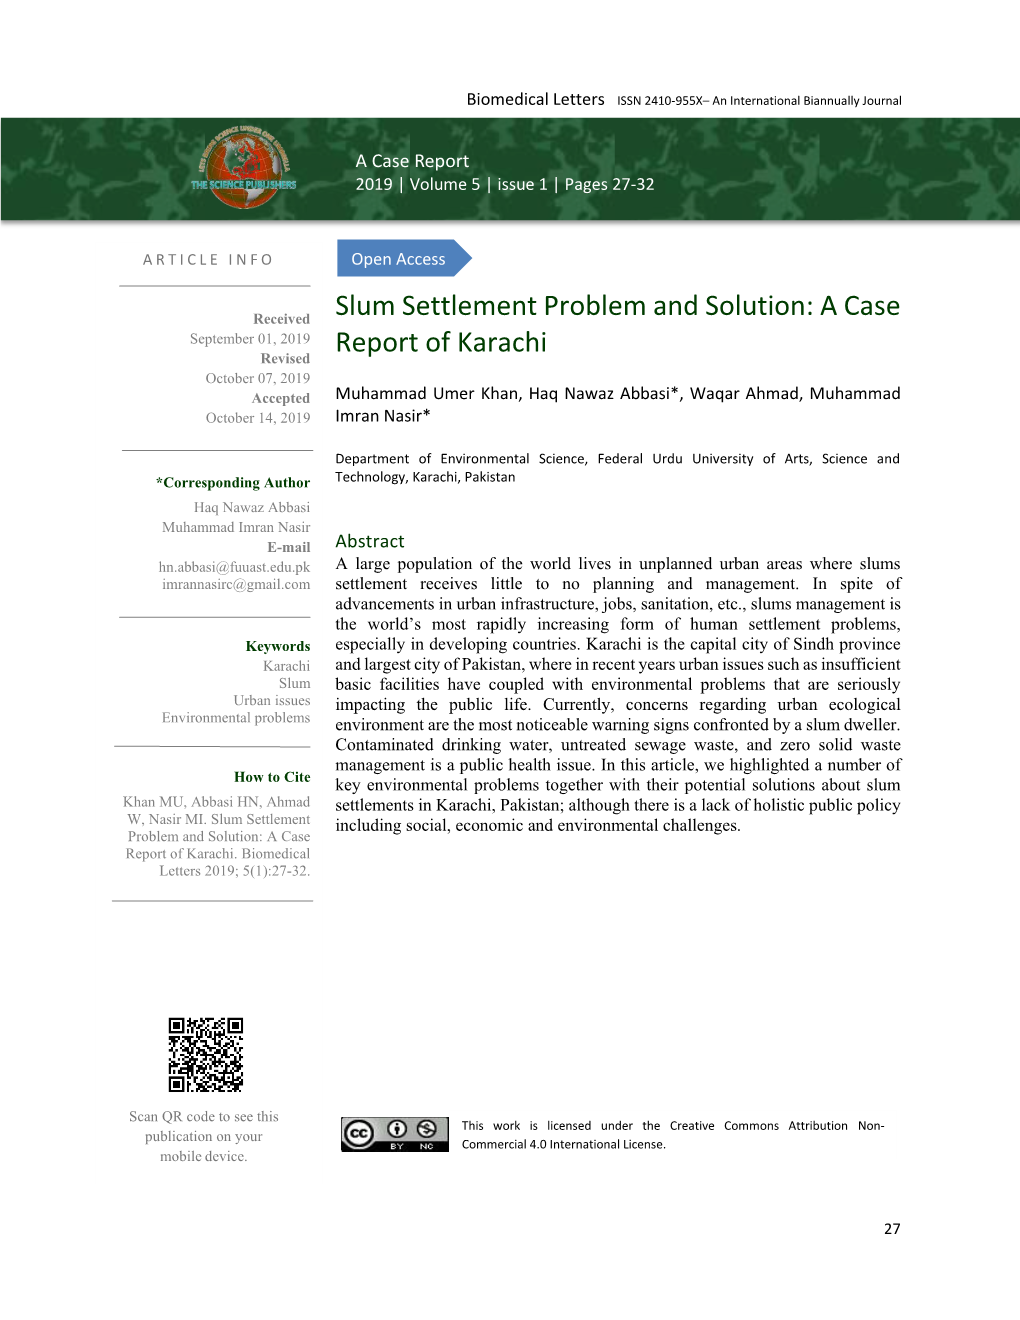 Slum Settlement Problem and Solution: a Case Report of Karachi